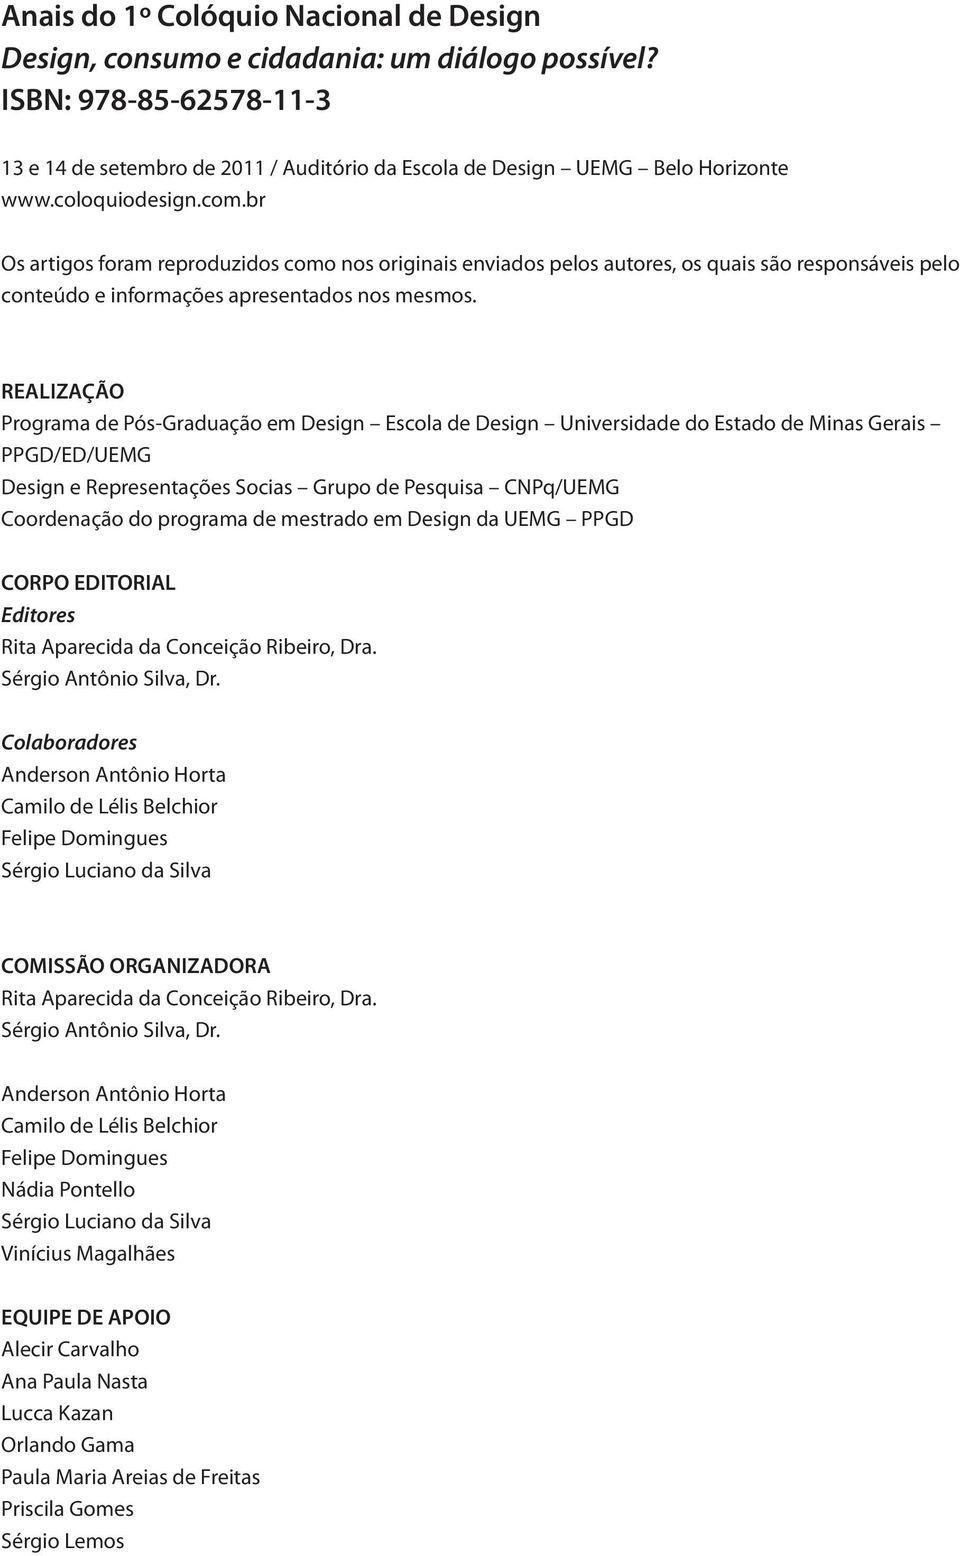 REALIZAÇÃO Programa de Pós-Graduação em Design Escola de Design Universidade do Estado de Minas Gerais PPGD/ED/UEMG Design e Representações Socias Grupo de Pesquisa CNPq/UEMG Coordenação do programa